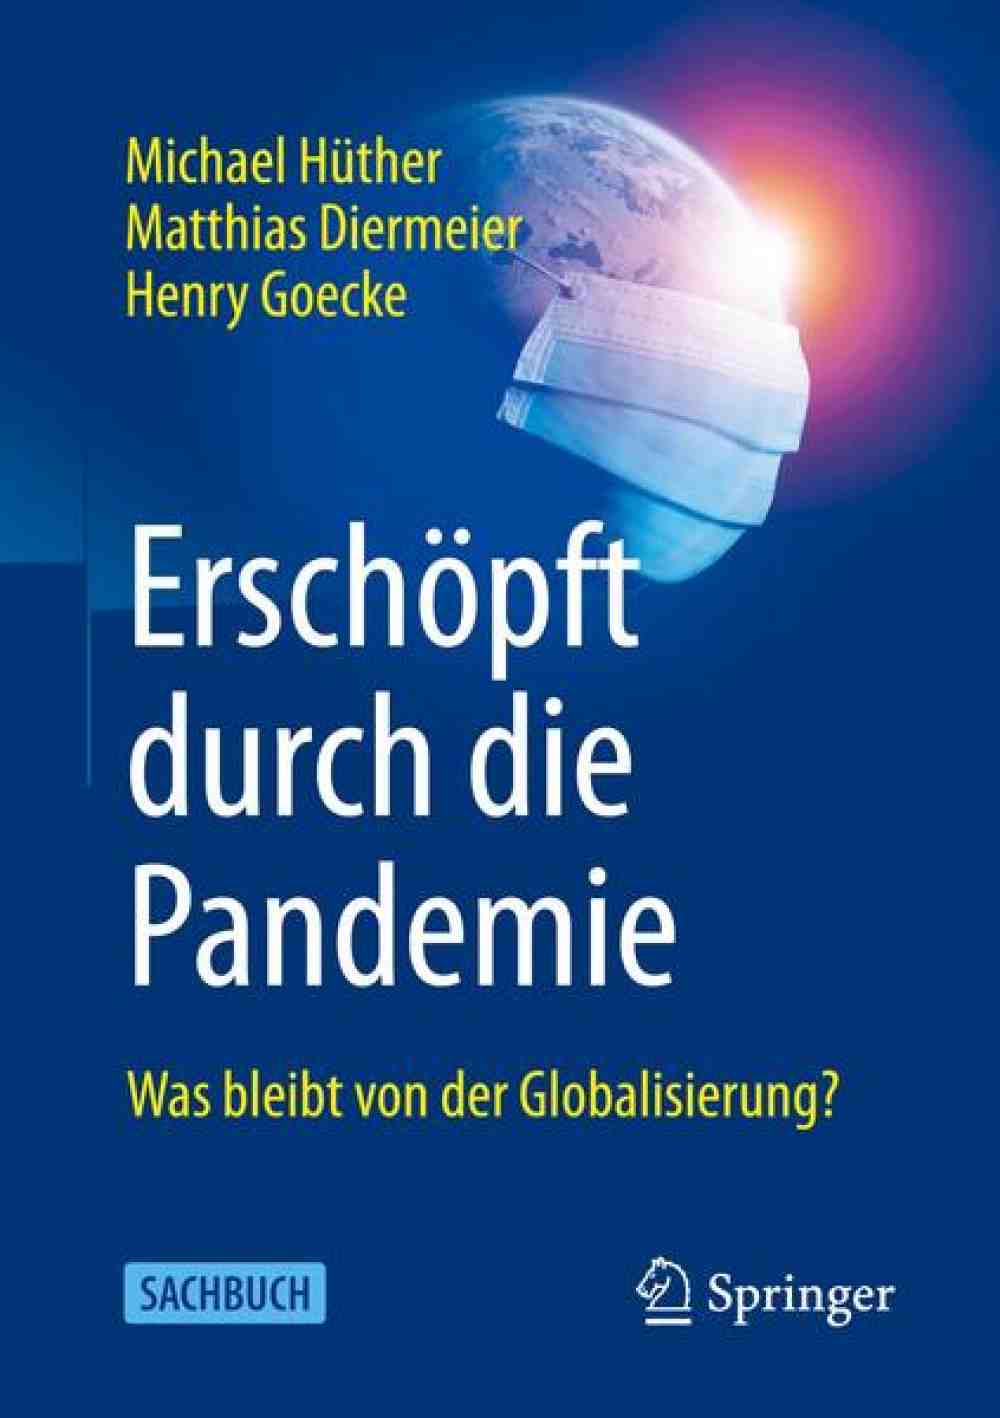 Anzeige: Lesetipps für Gütersloh – »Was bleibt von der Globalisierung?« Neuerscheinung von IW-Direktor Michael Hüther – jetzt bestellen!